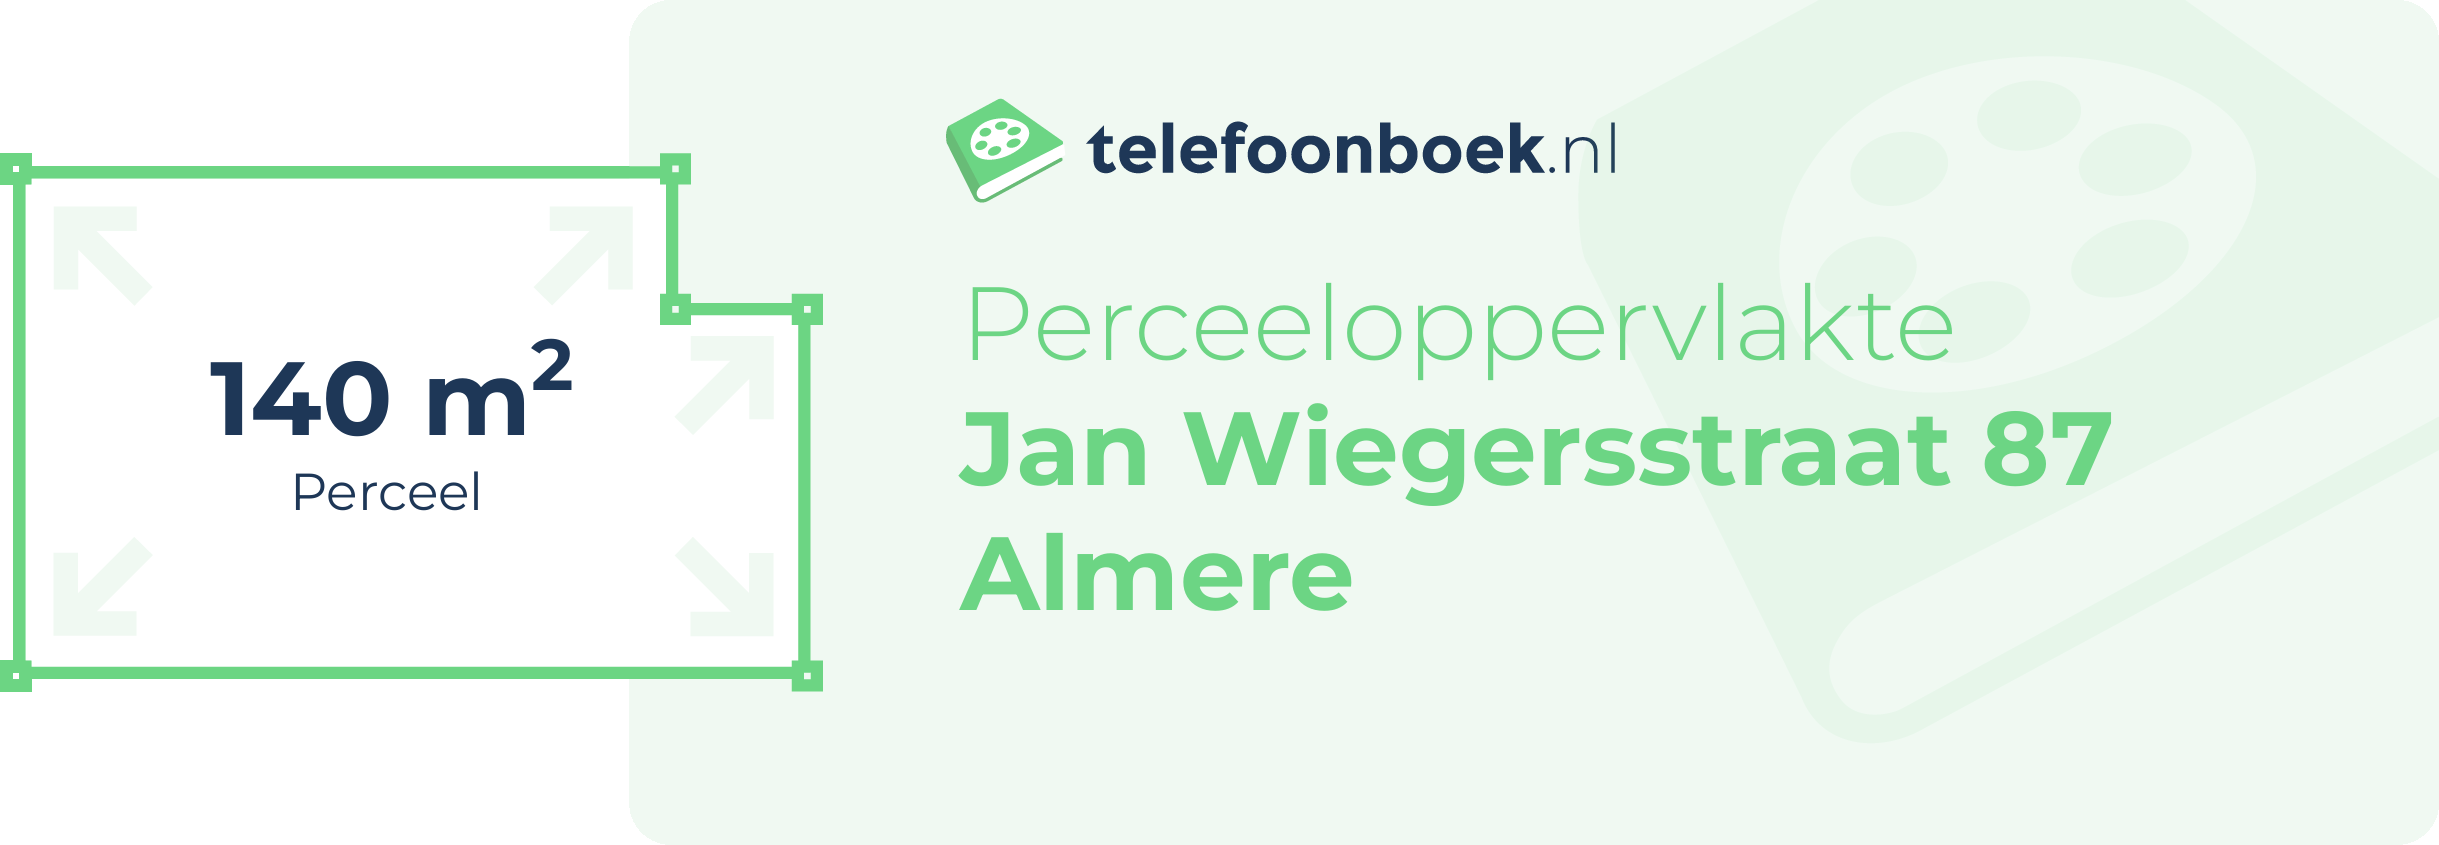 Perceeloppervlakte Jan Wiegersstraat 87 Almere